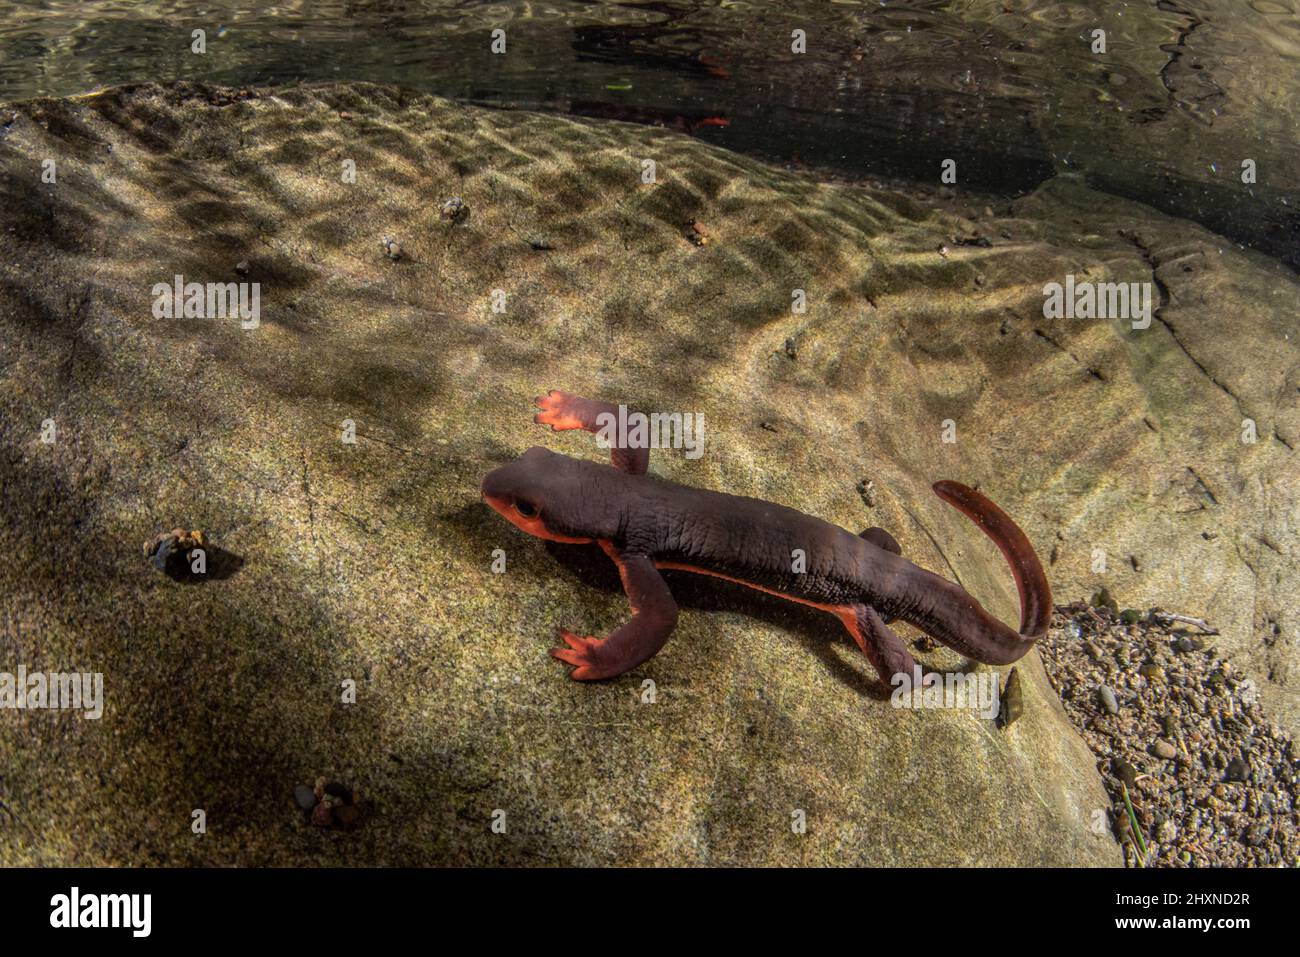 Newt de vientre rojo (Taricha rivularis) Un salamandras acuáticas del norte de California, viven en arroyos limpios y fluidos. Foto de stock